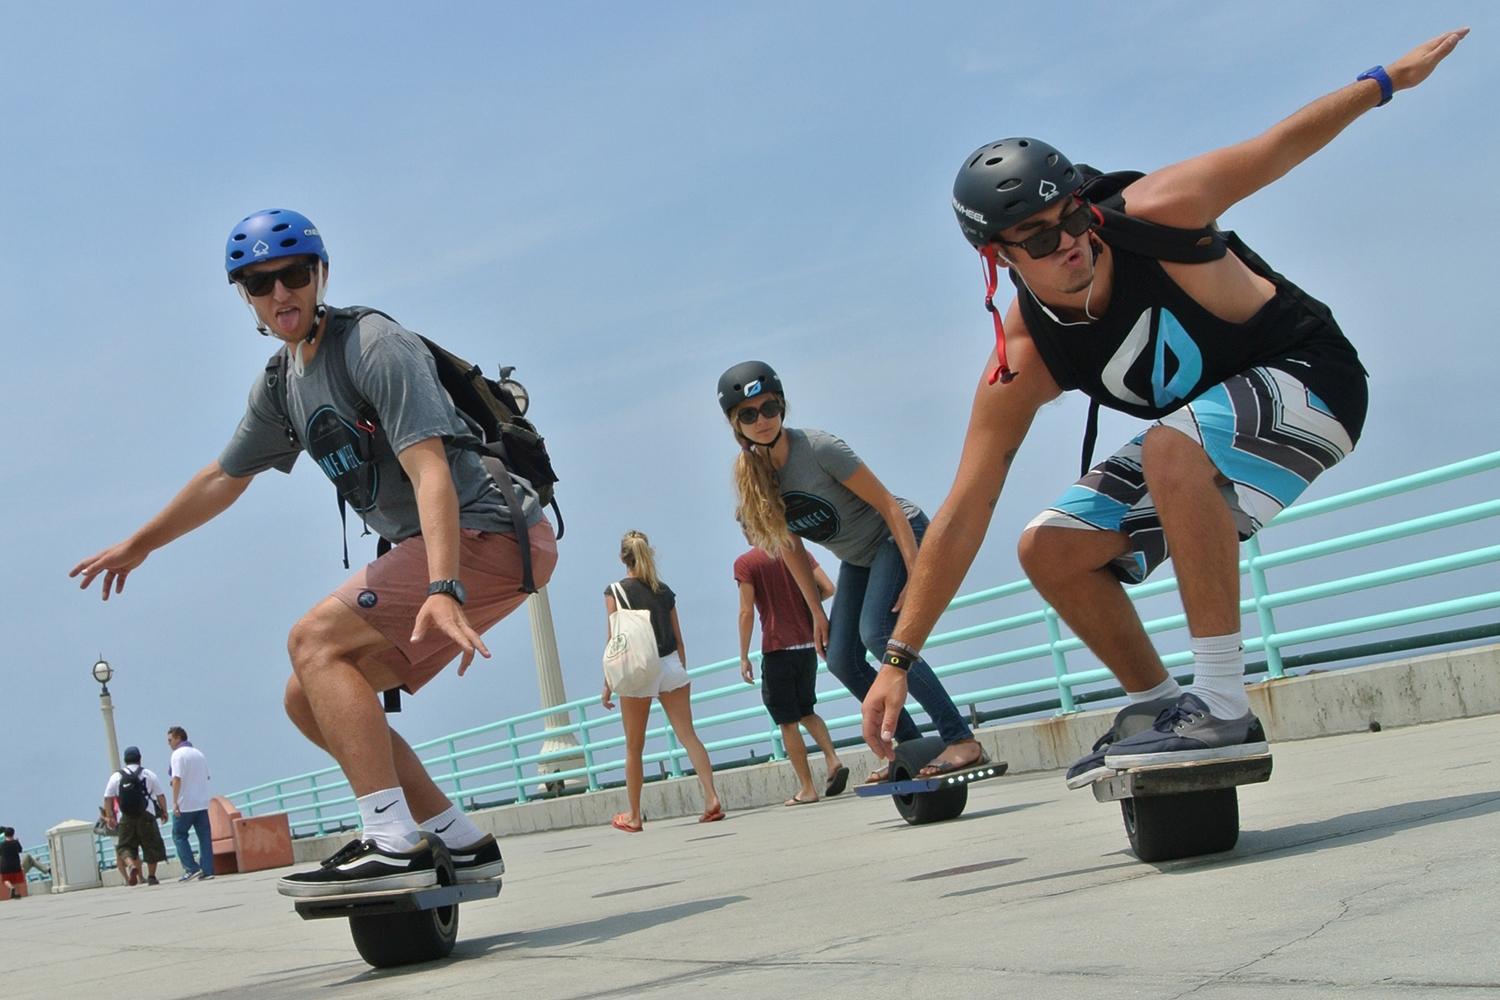 onewheel electric skateboard lifestyle image 22